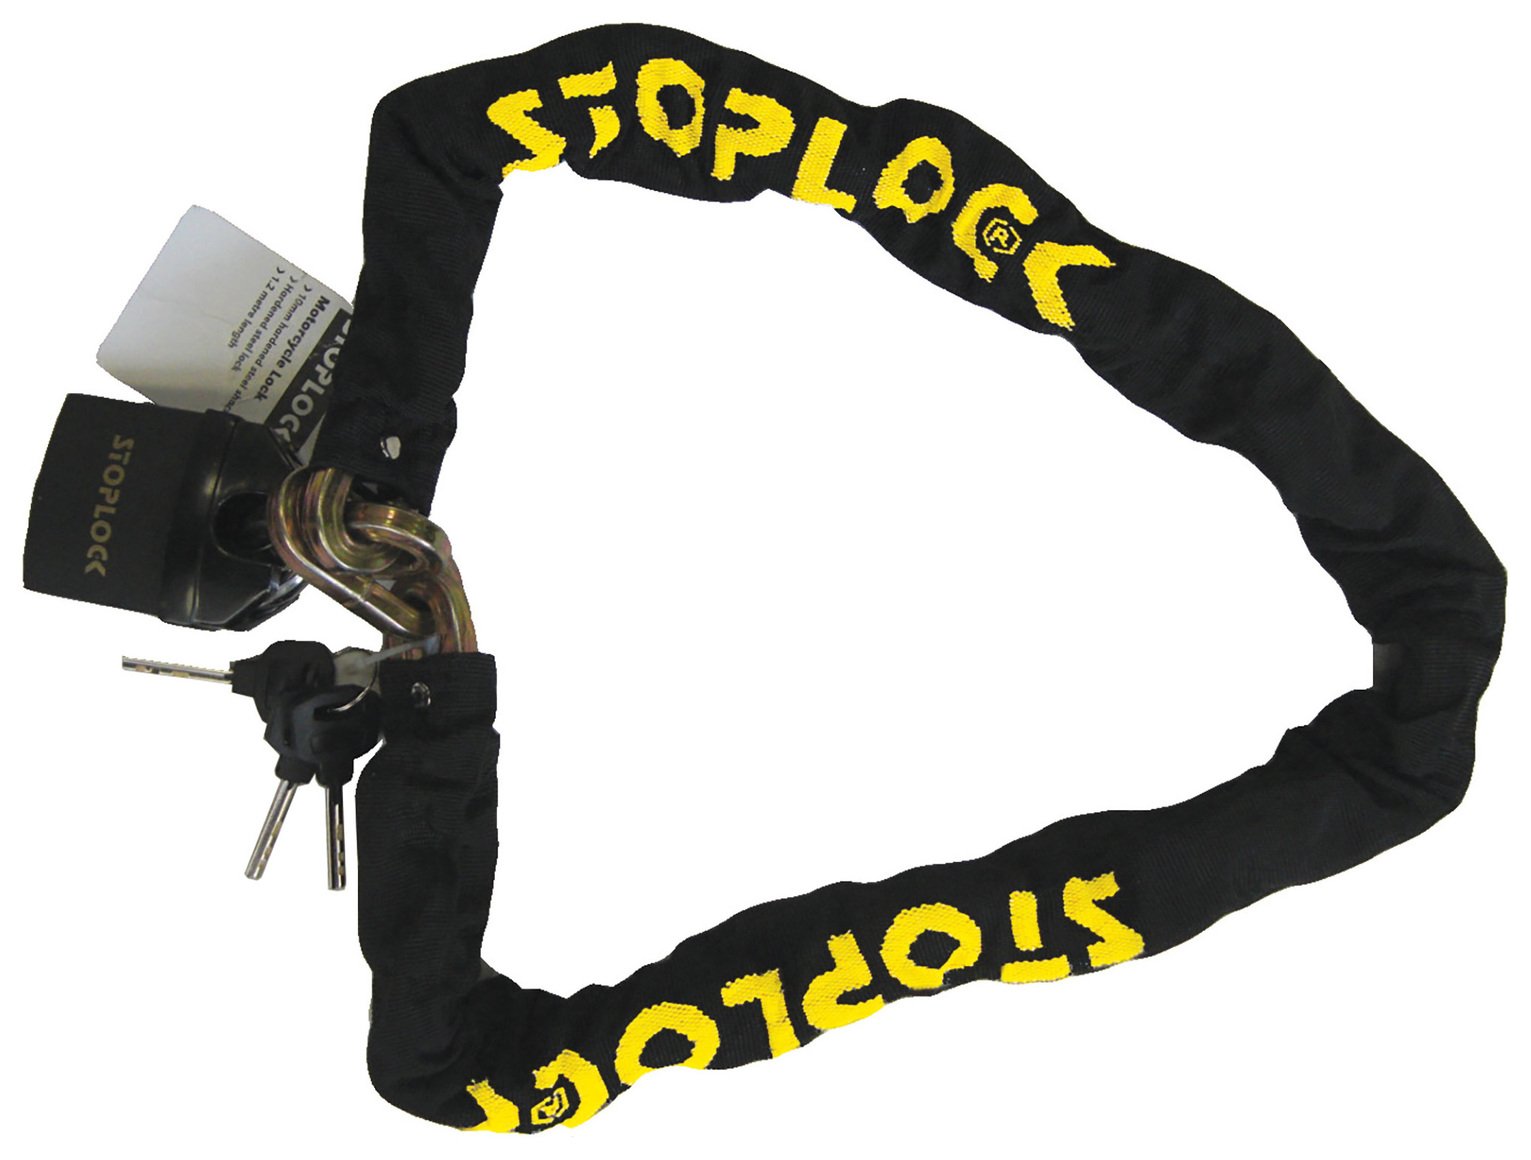 Stoplock Chain Motorbike Lock - 1.2m